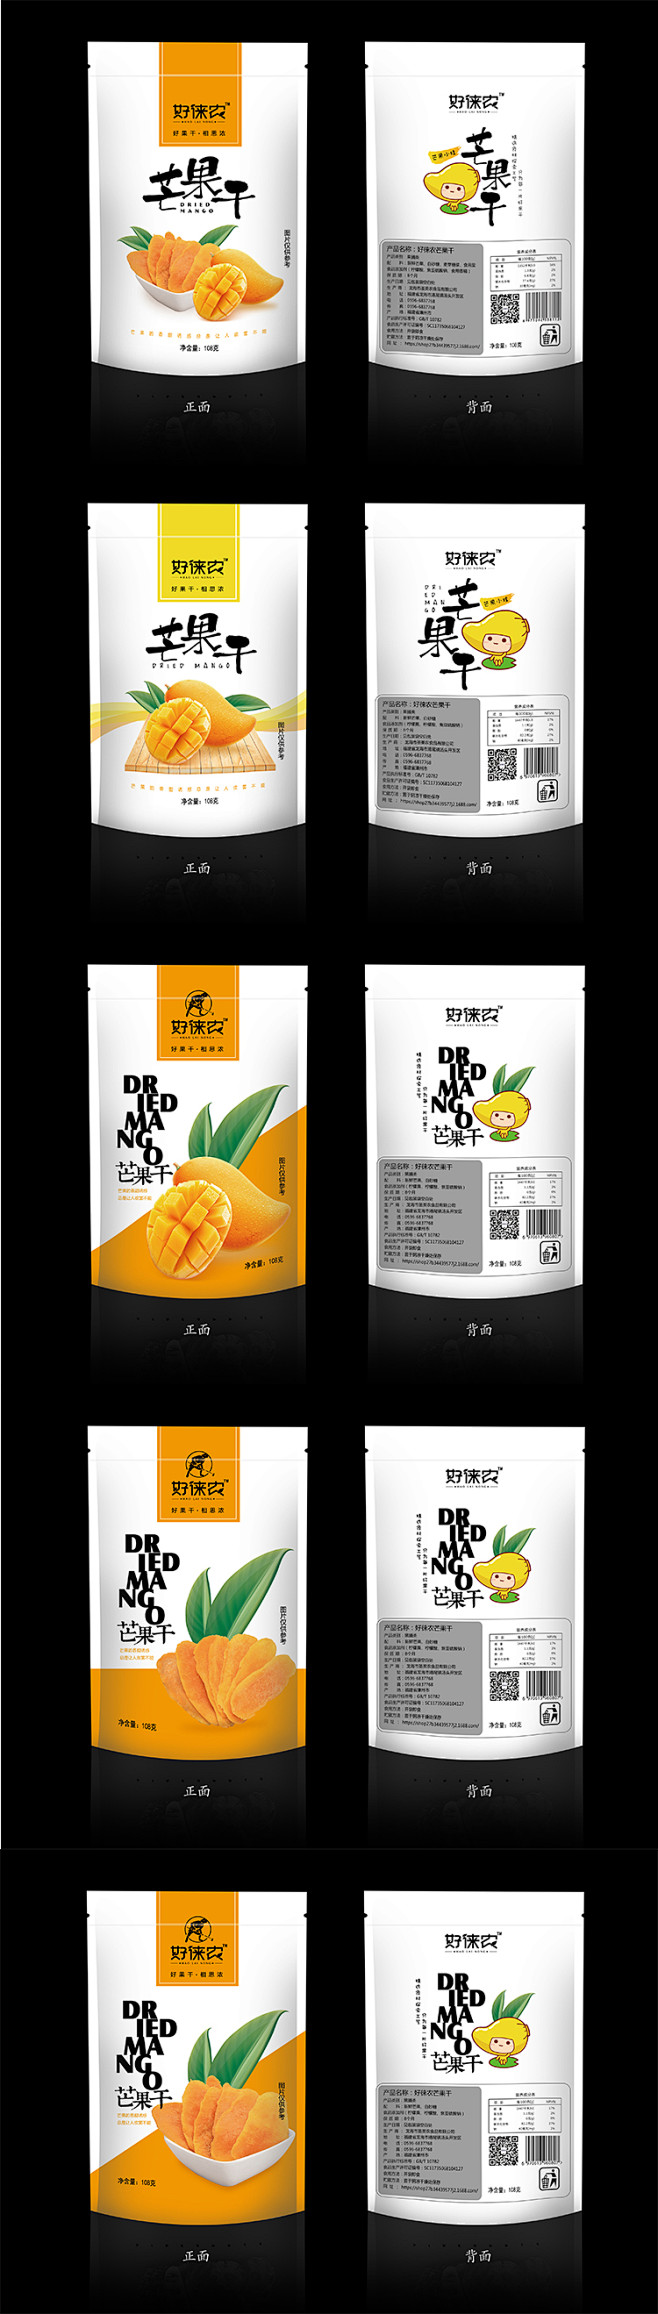 芒果干-水果干包装设计